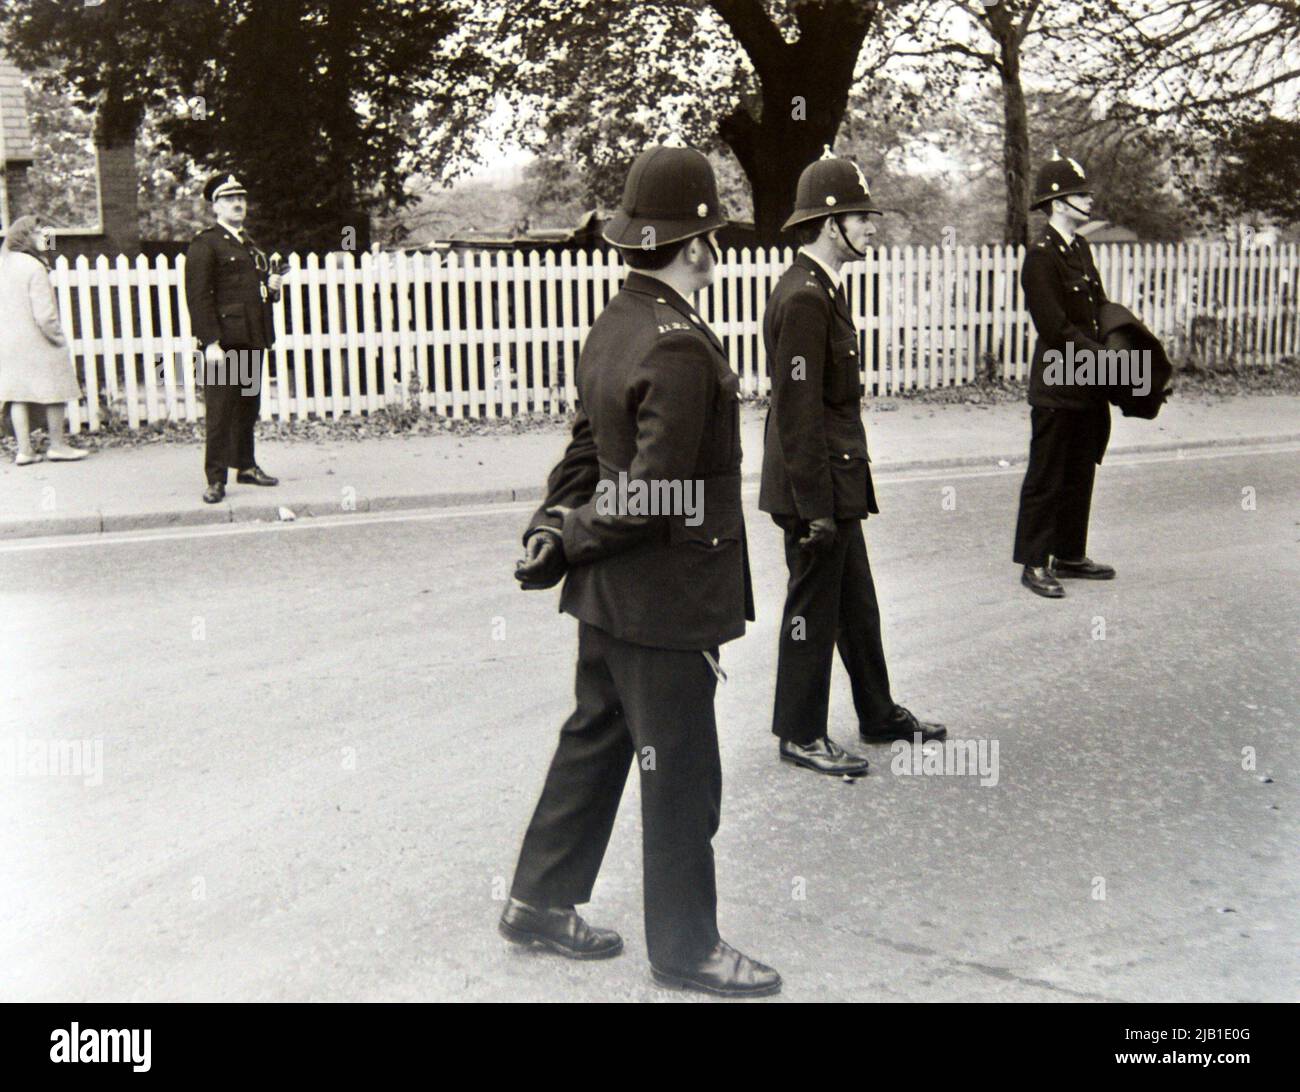 Polizeibeamte, die eine Anti-Rassismus-Demonstration überwachten, marschierten 1972 durch Leicester, England, Großbritannien und die britischen Inseln. Ein leitender Beamter steht auf dem Bürgersteig, um die Aufsicht zu übernehmen. Stockfoto